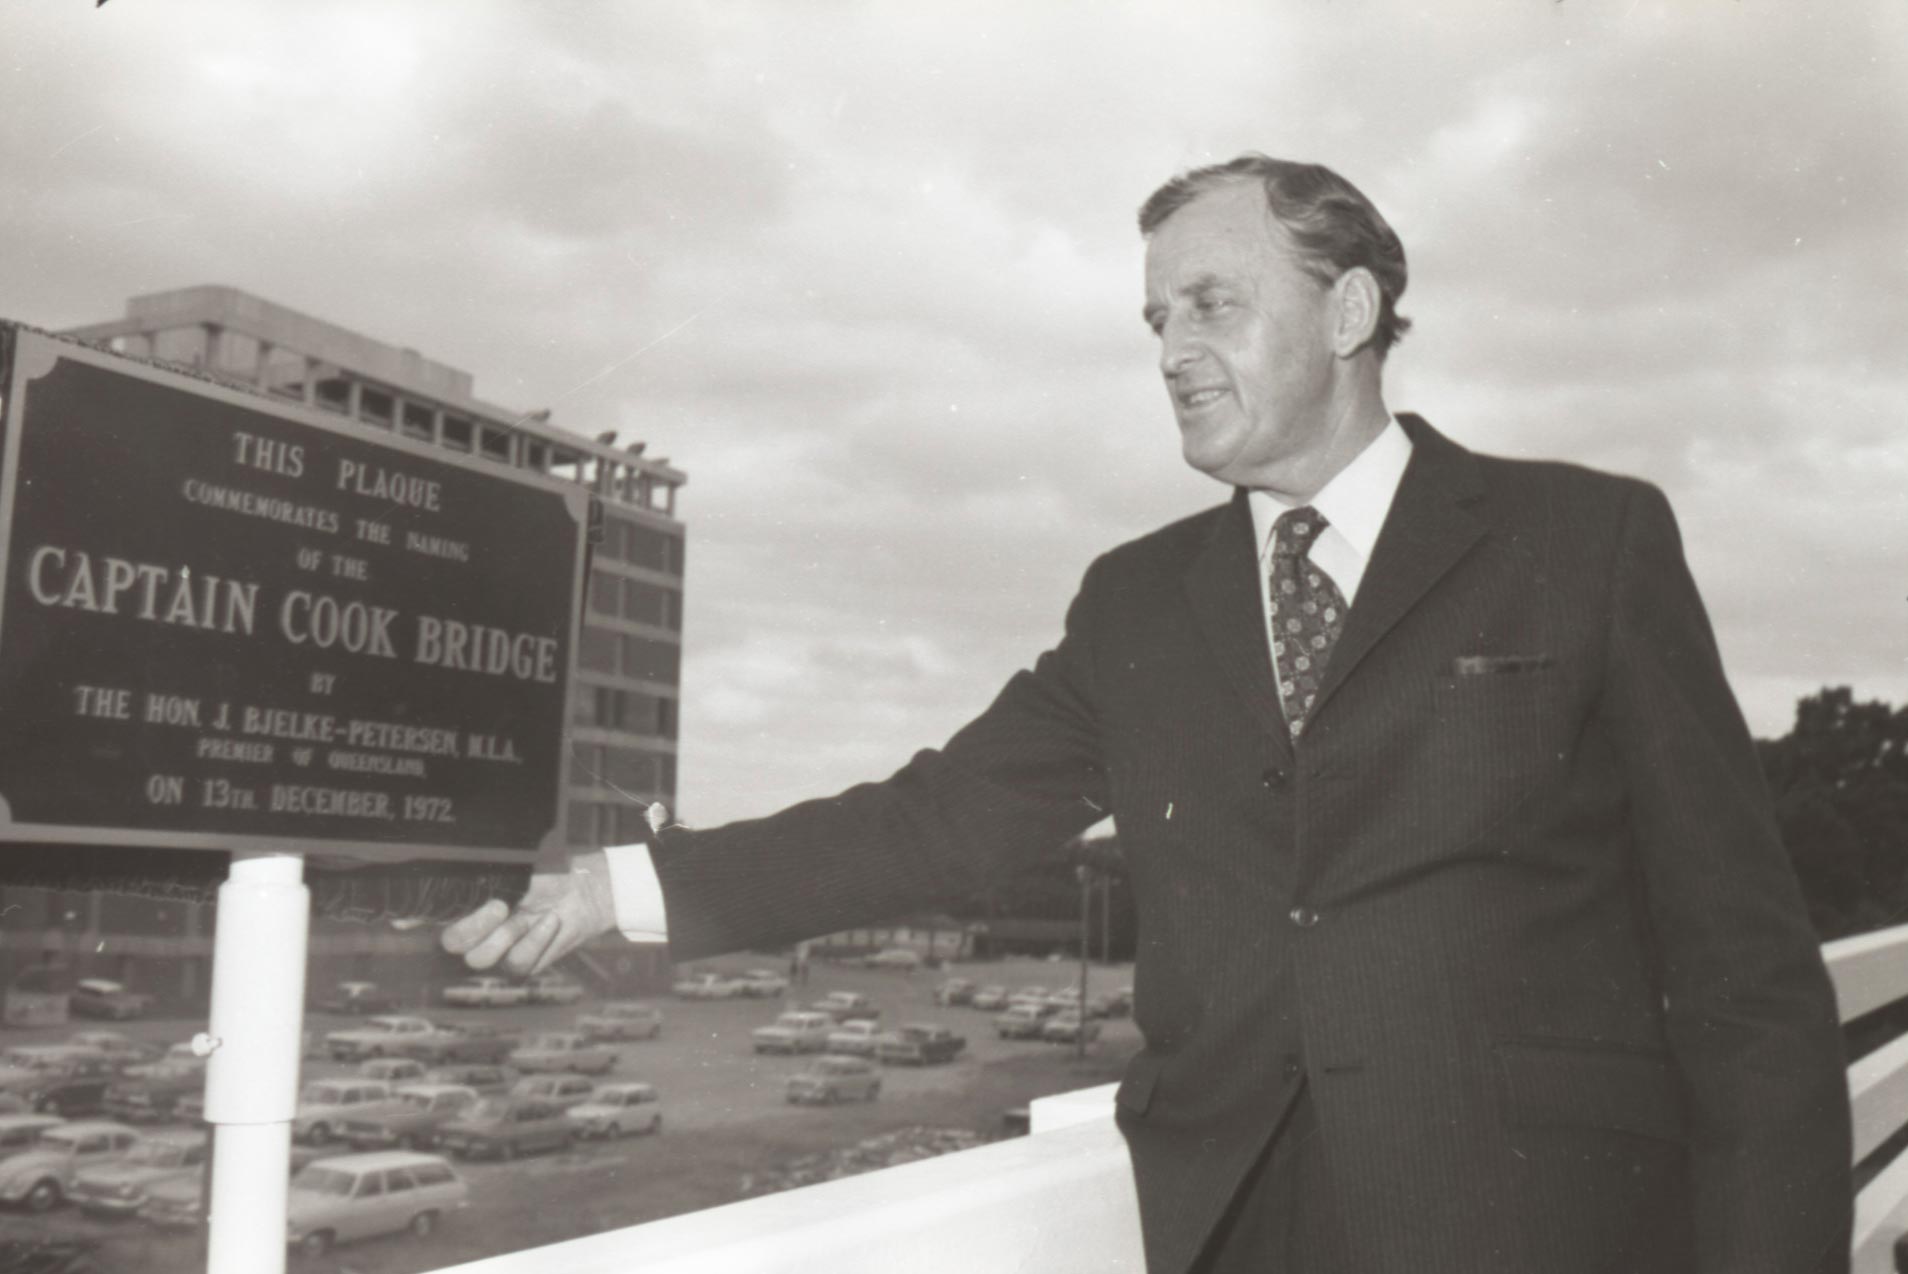 Premier of Queensland Joh Bjelke-Peterson opening the Captain Cook Bridge, Brisbane, 1972.